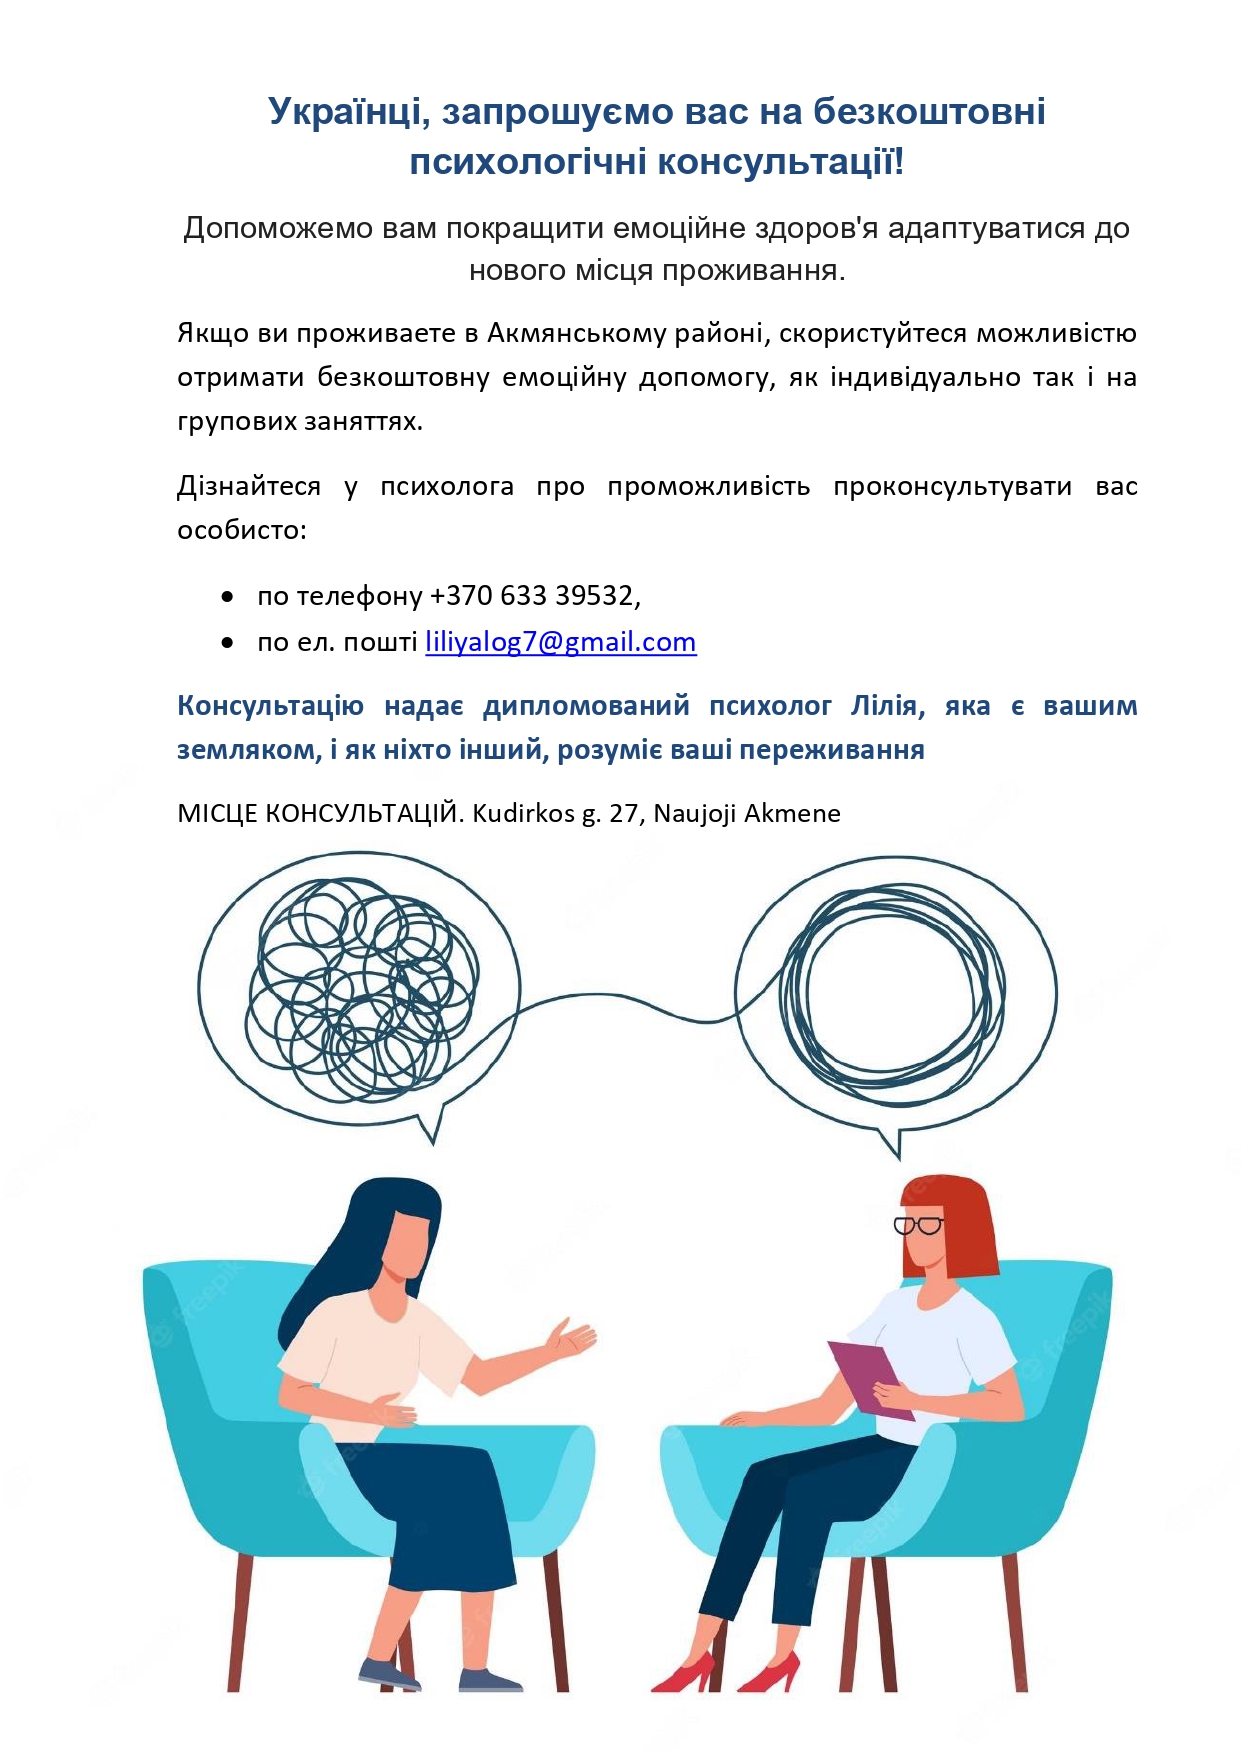 Українці,-запрошуємо-вас-на-безкоштовні-психологічні-консультації!